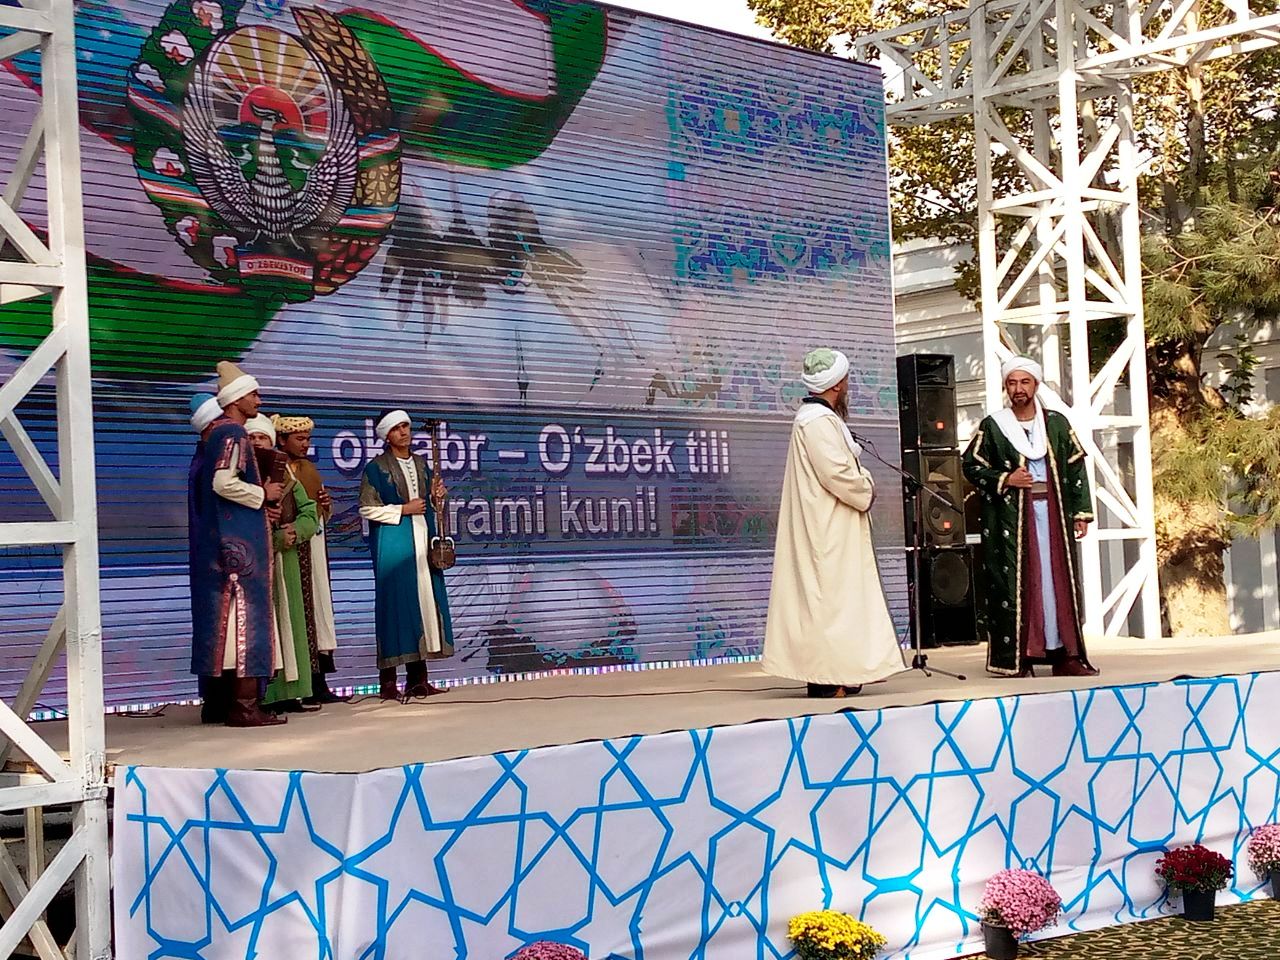 21 октября - День узбекского языка!